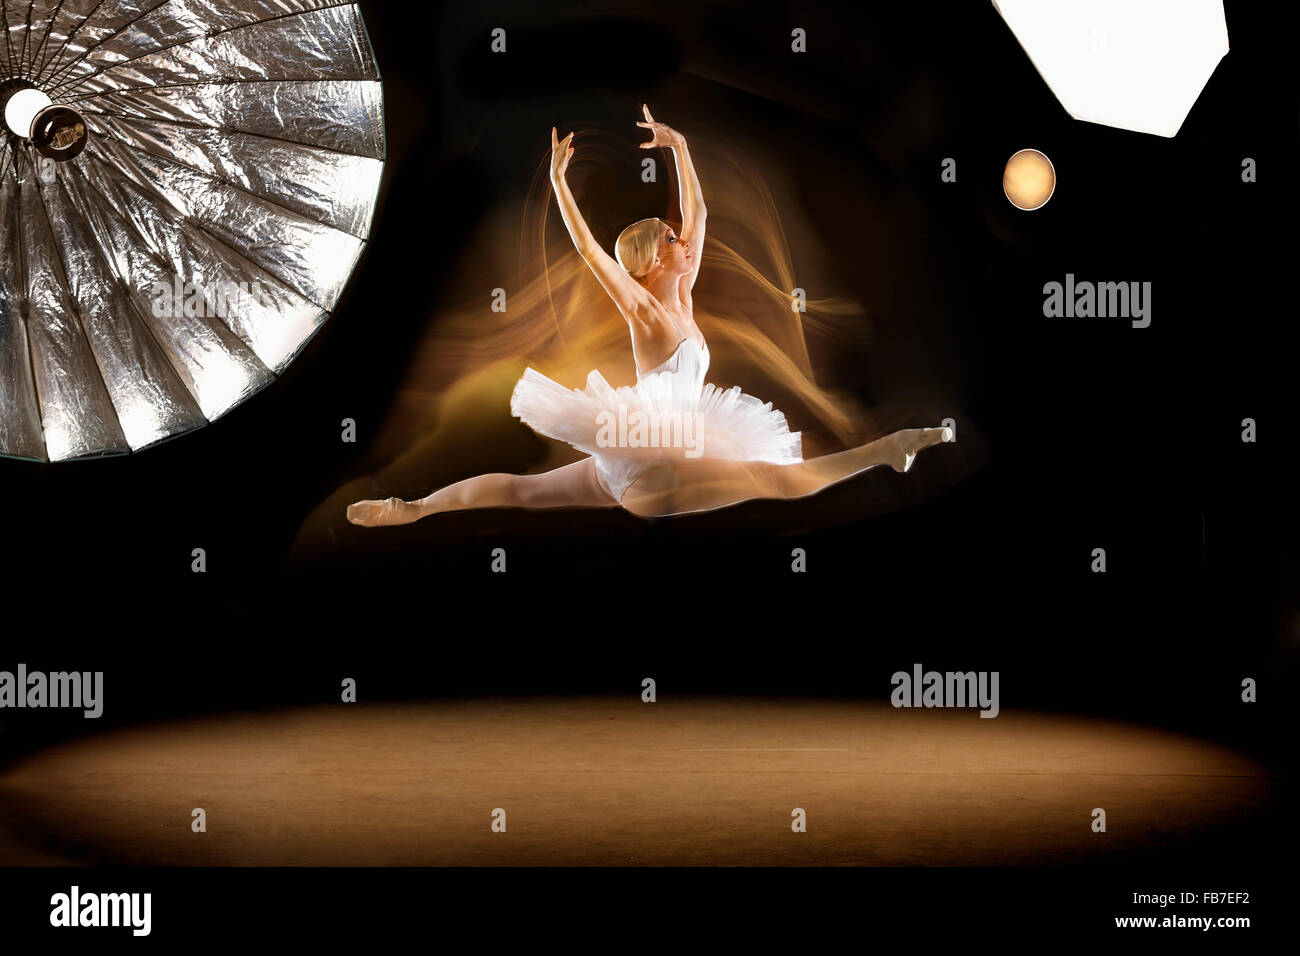 Full length of ballerina doing splits in mid-air at studio Stock Photo